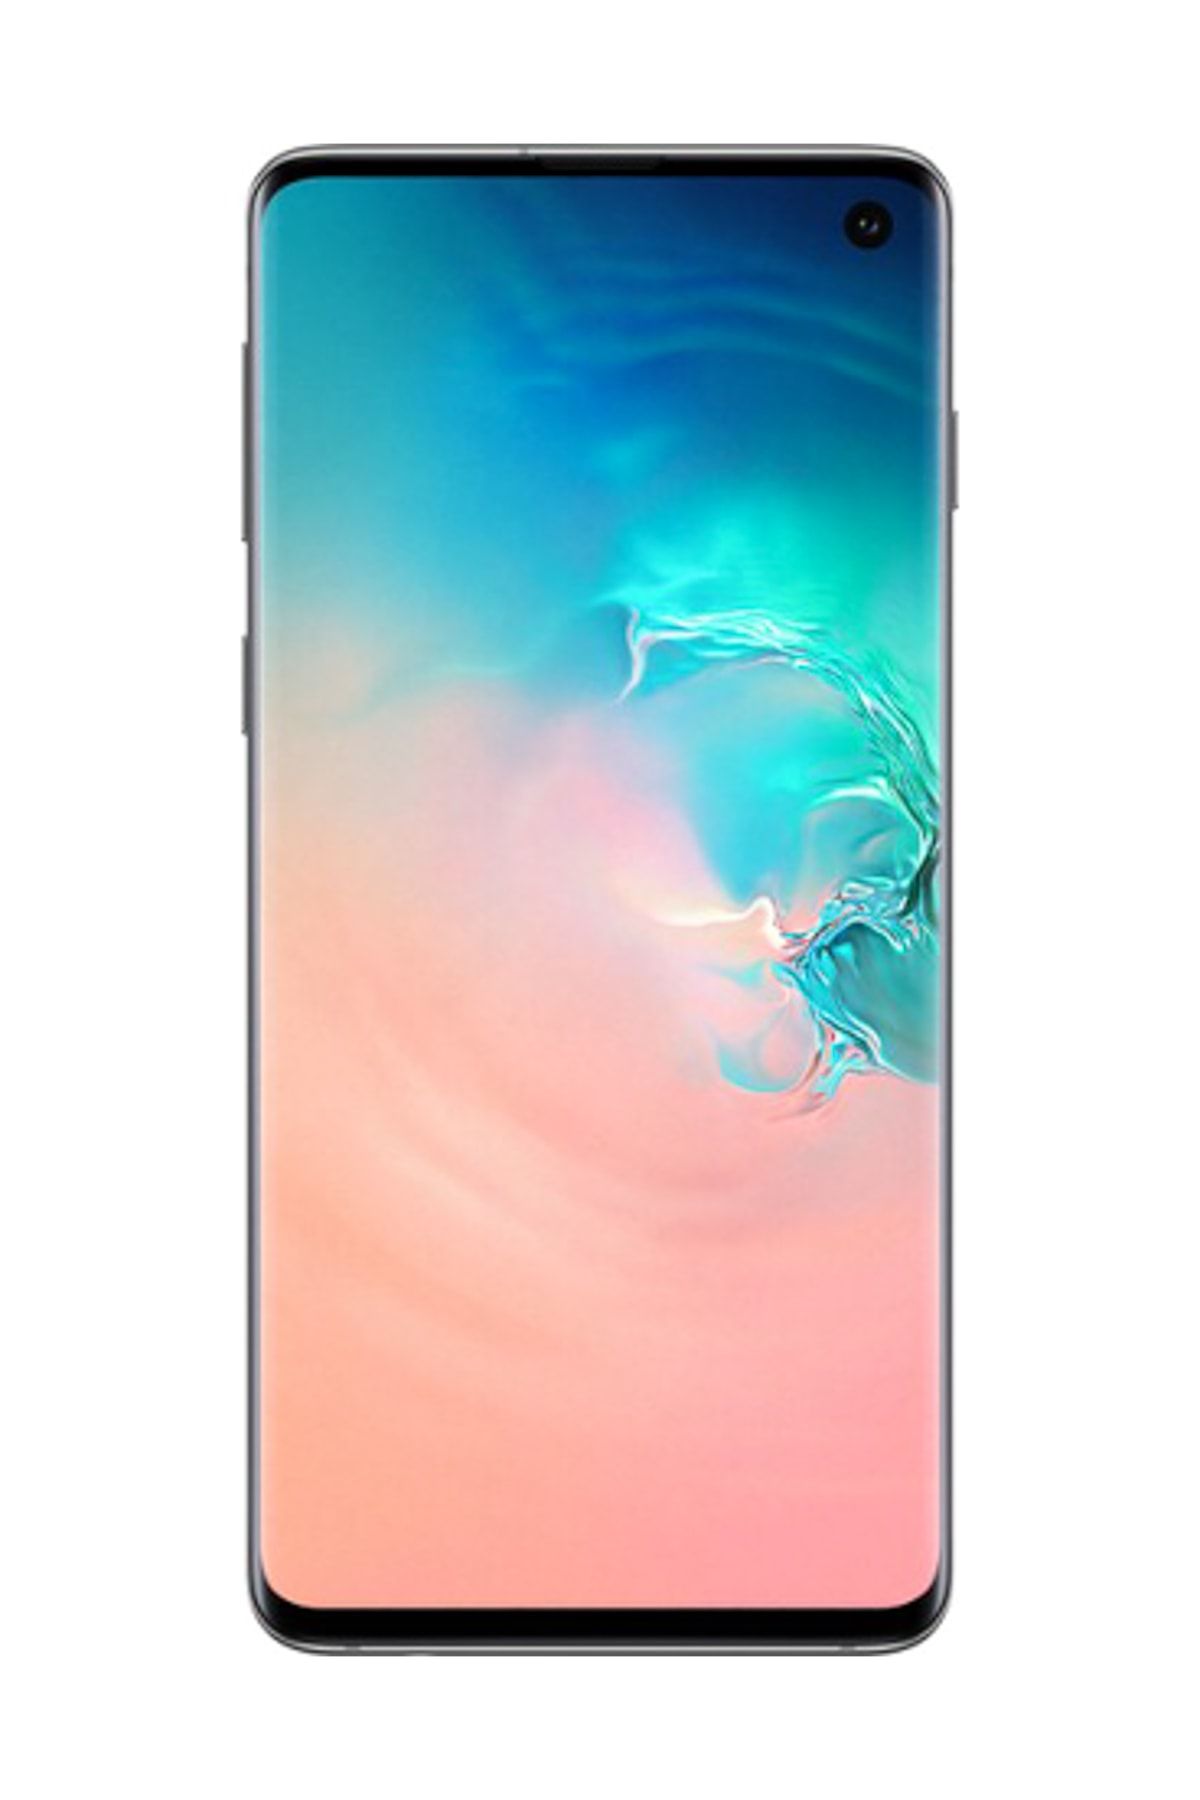 Samsung Yenilenmiş Galaxy S10 Beyaz 128 GB Cep Telefonu (12 Ay Garantili)